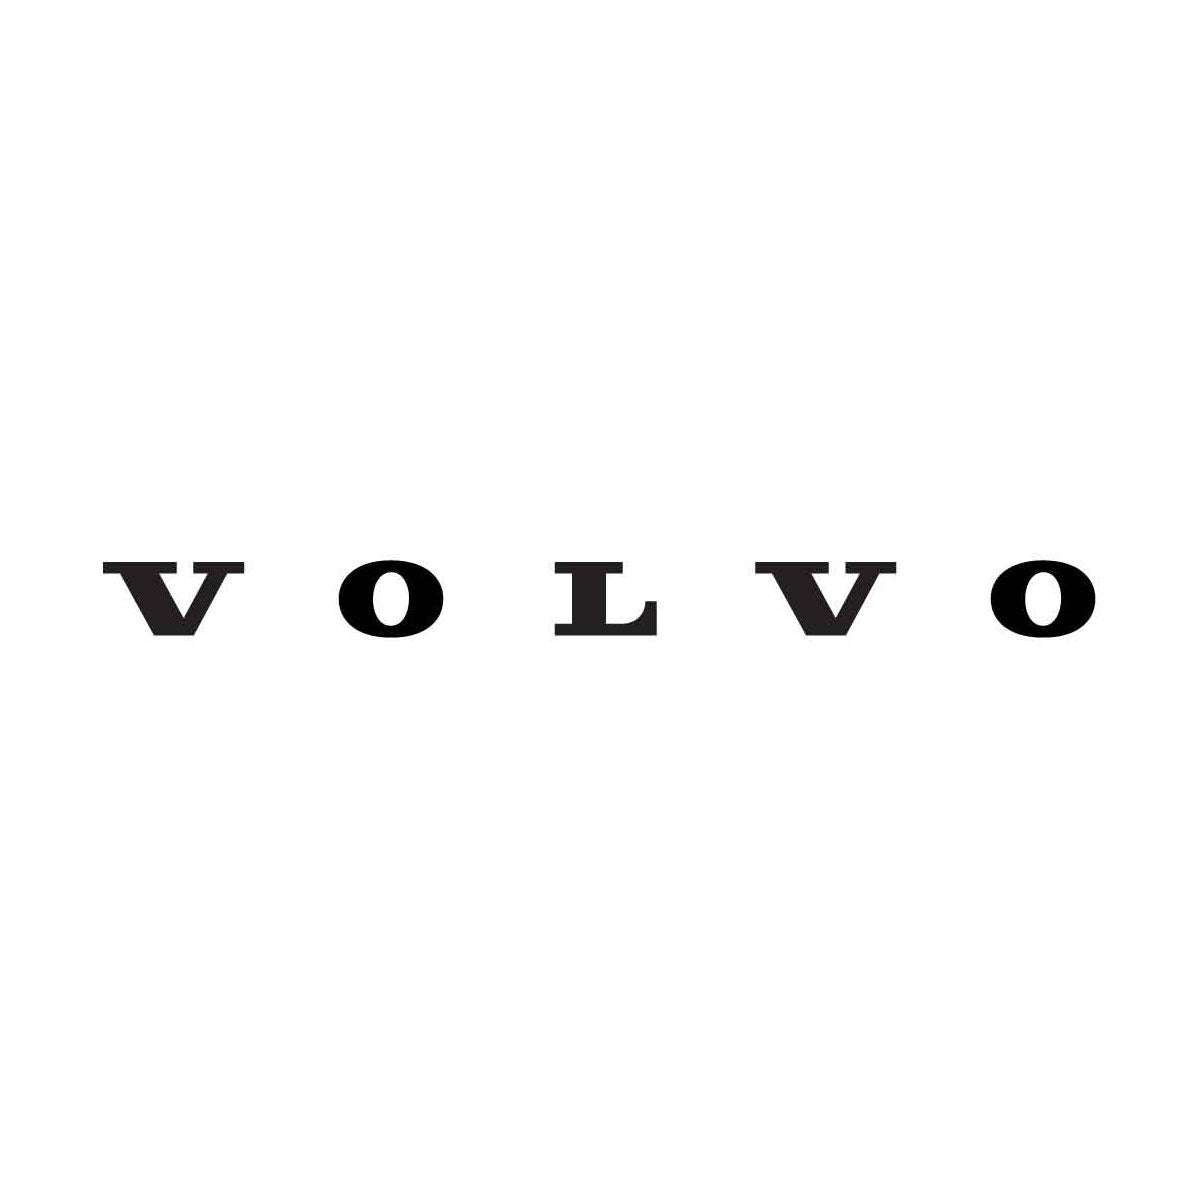 Article de Volvo